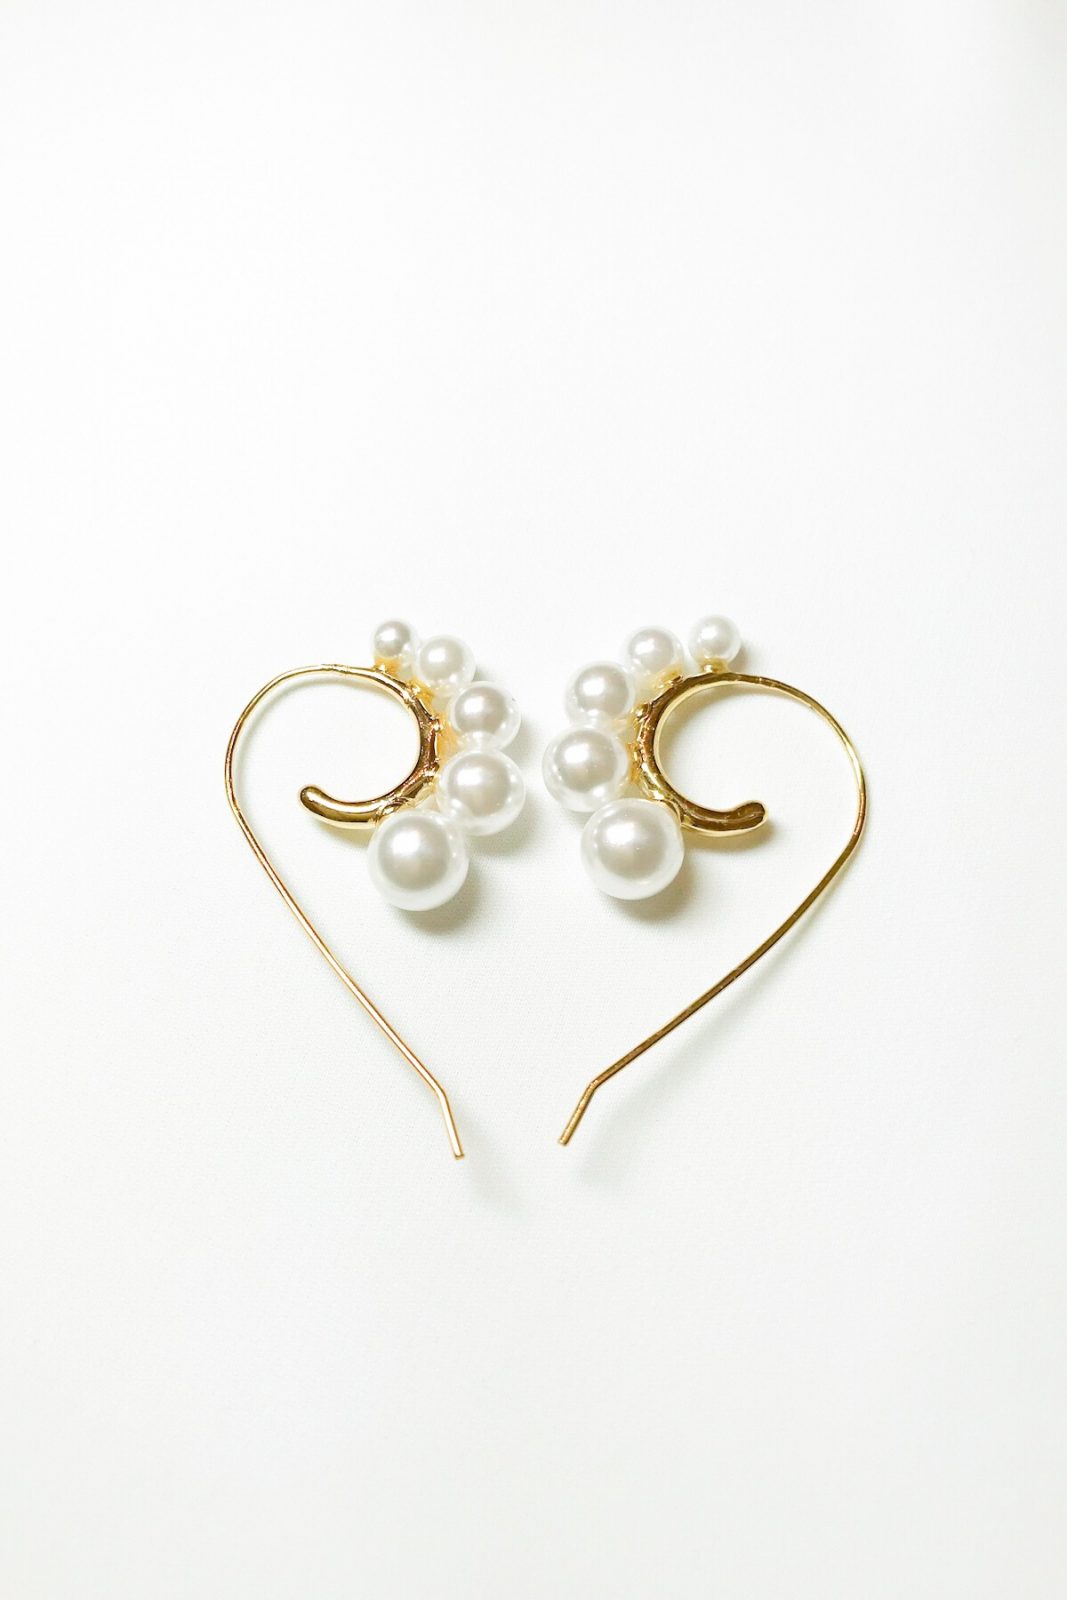 SKYE modern minimalist women fashion accessories Amour Pearl Earrings 13